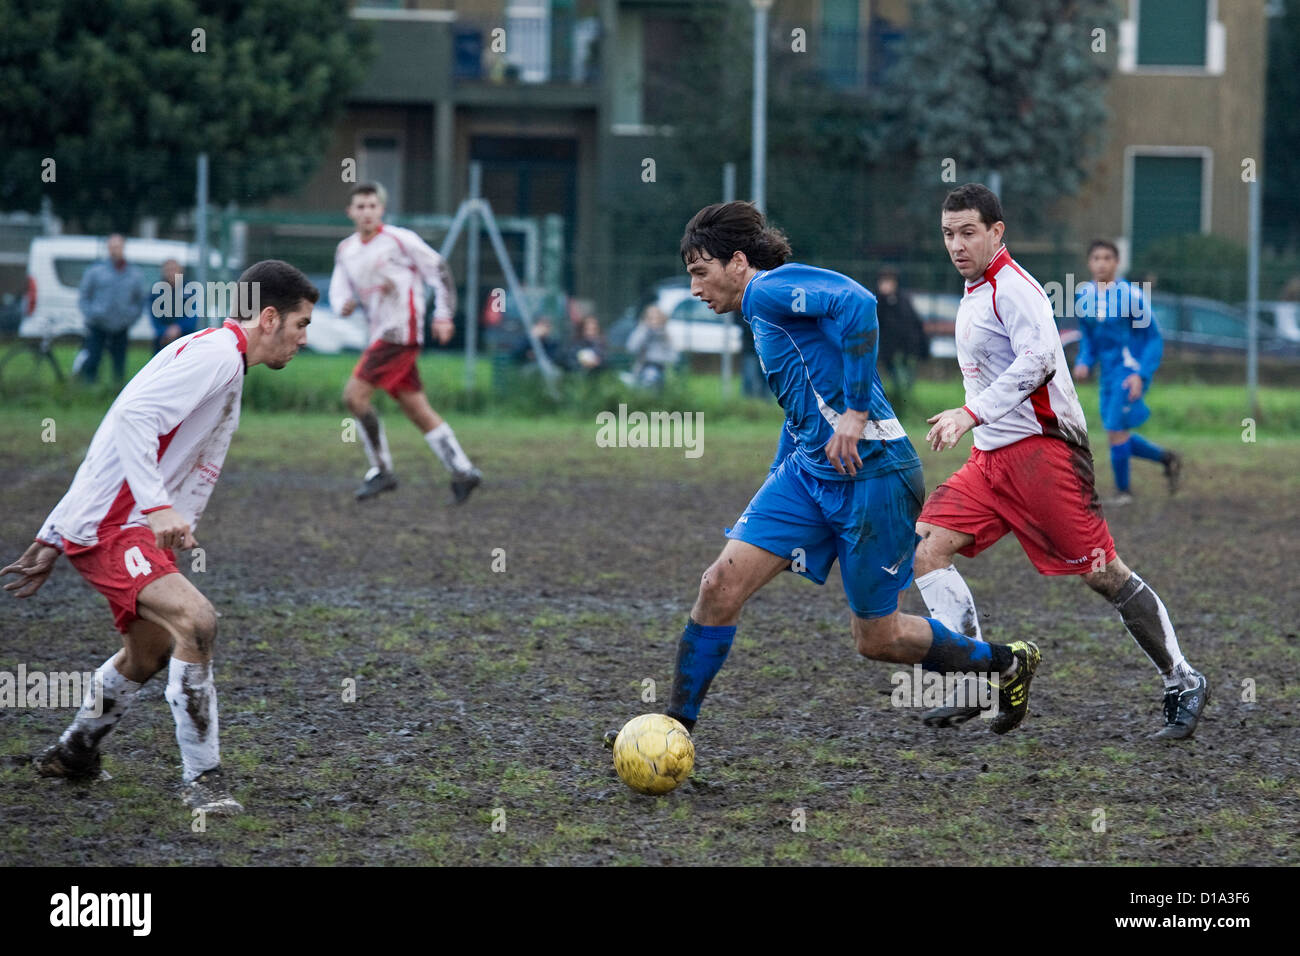 Italia, Sesto san giovanni, juego de fútbol Foto de stock